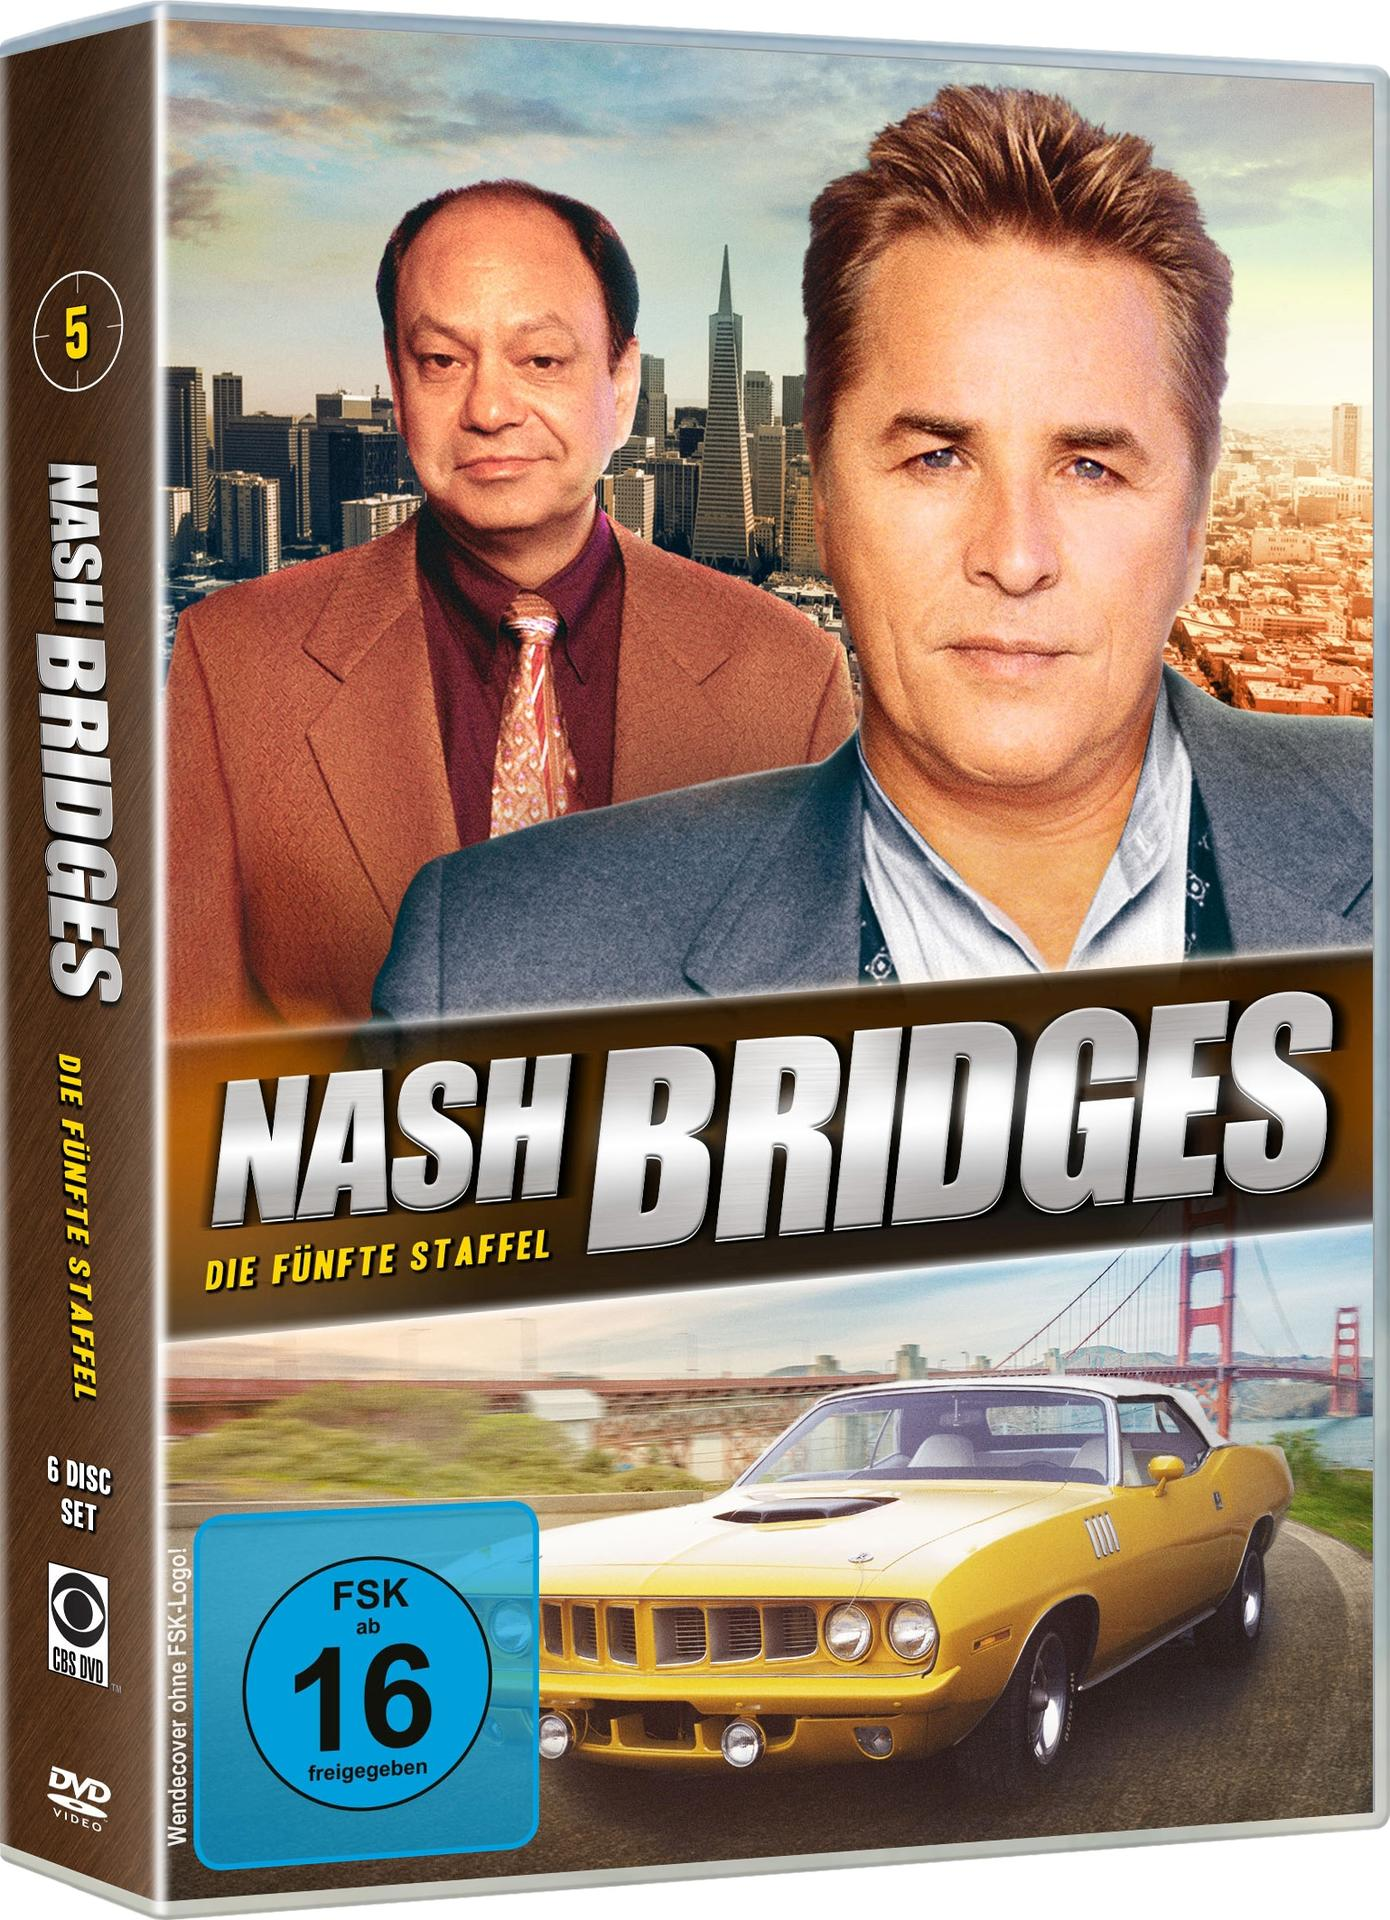 Nash Bridges Episode 5 Staffel - DVD - 79-100